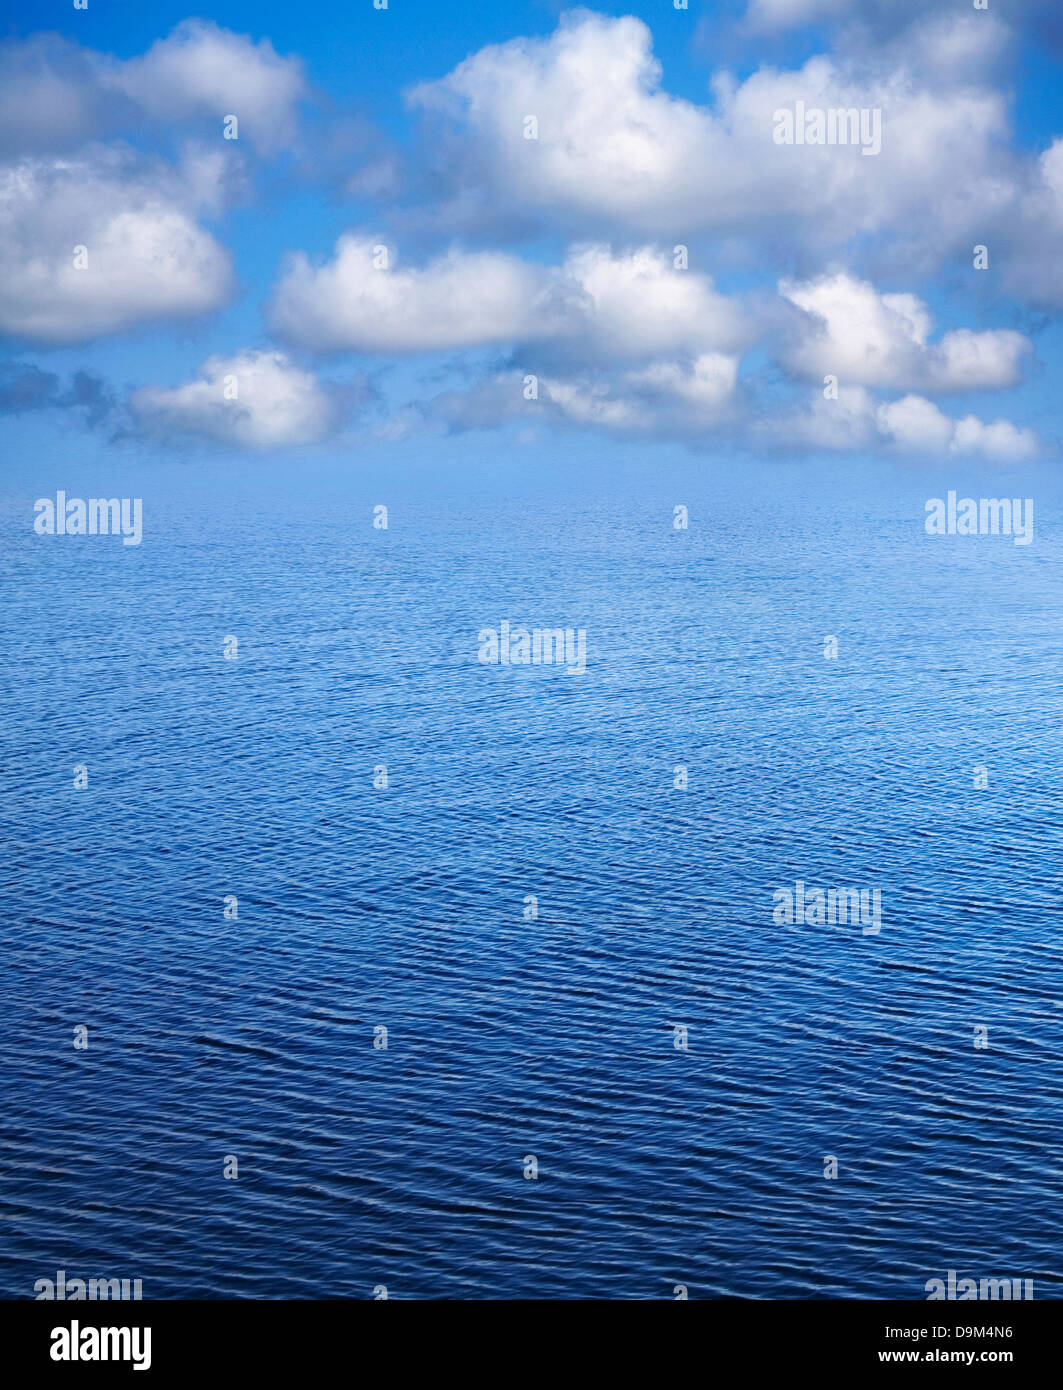 Eine blaue wellige Seascape, Himmel und Wolke Natur Hintergrund Stockfoto